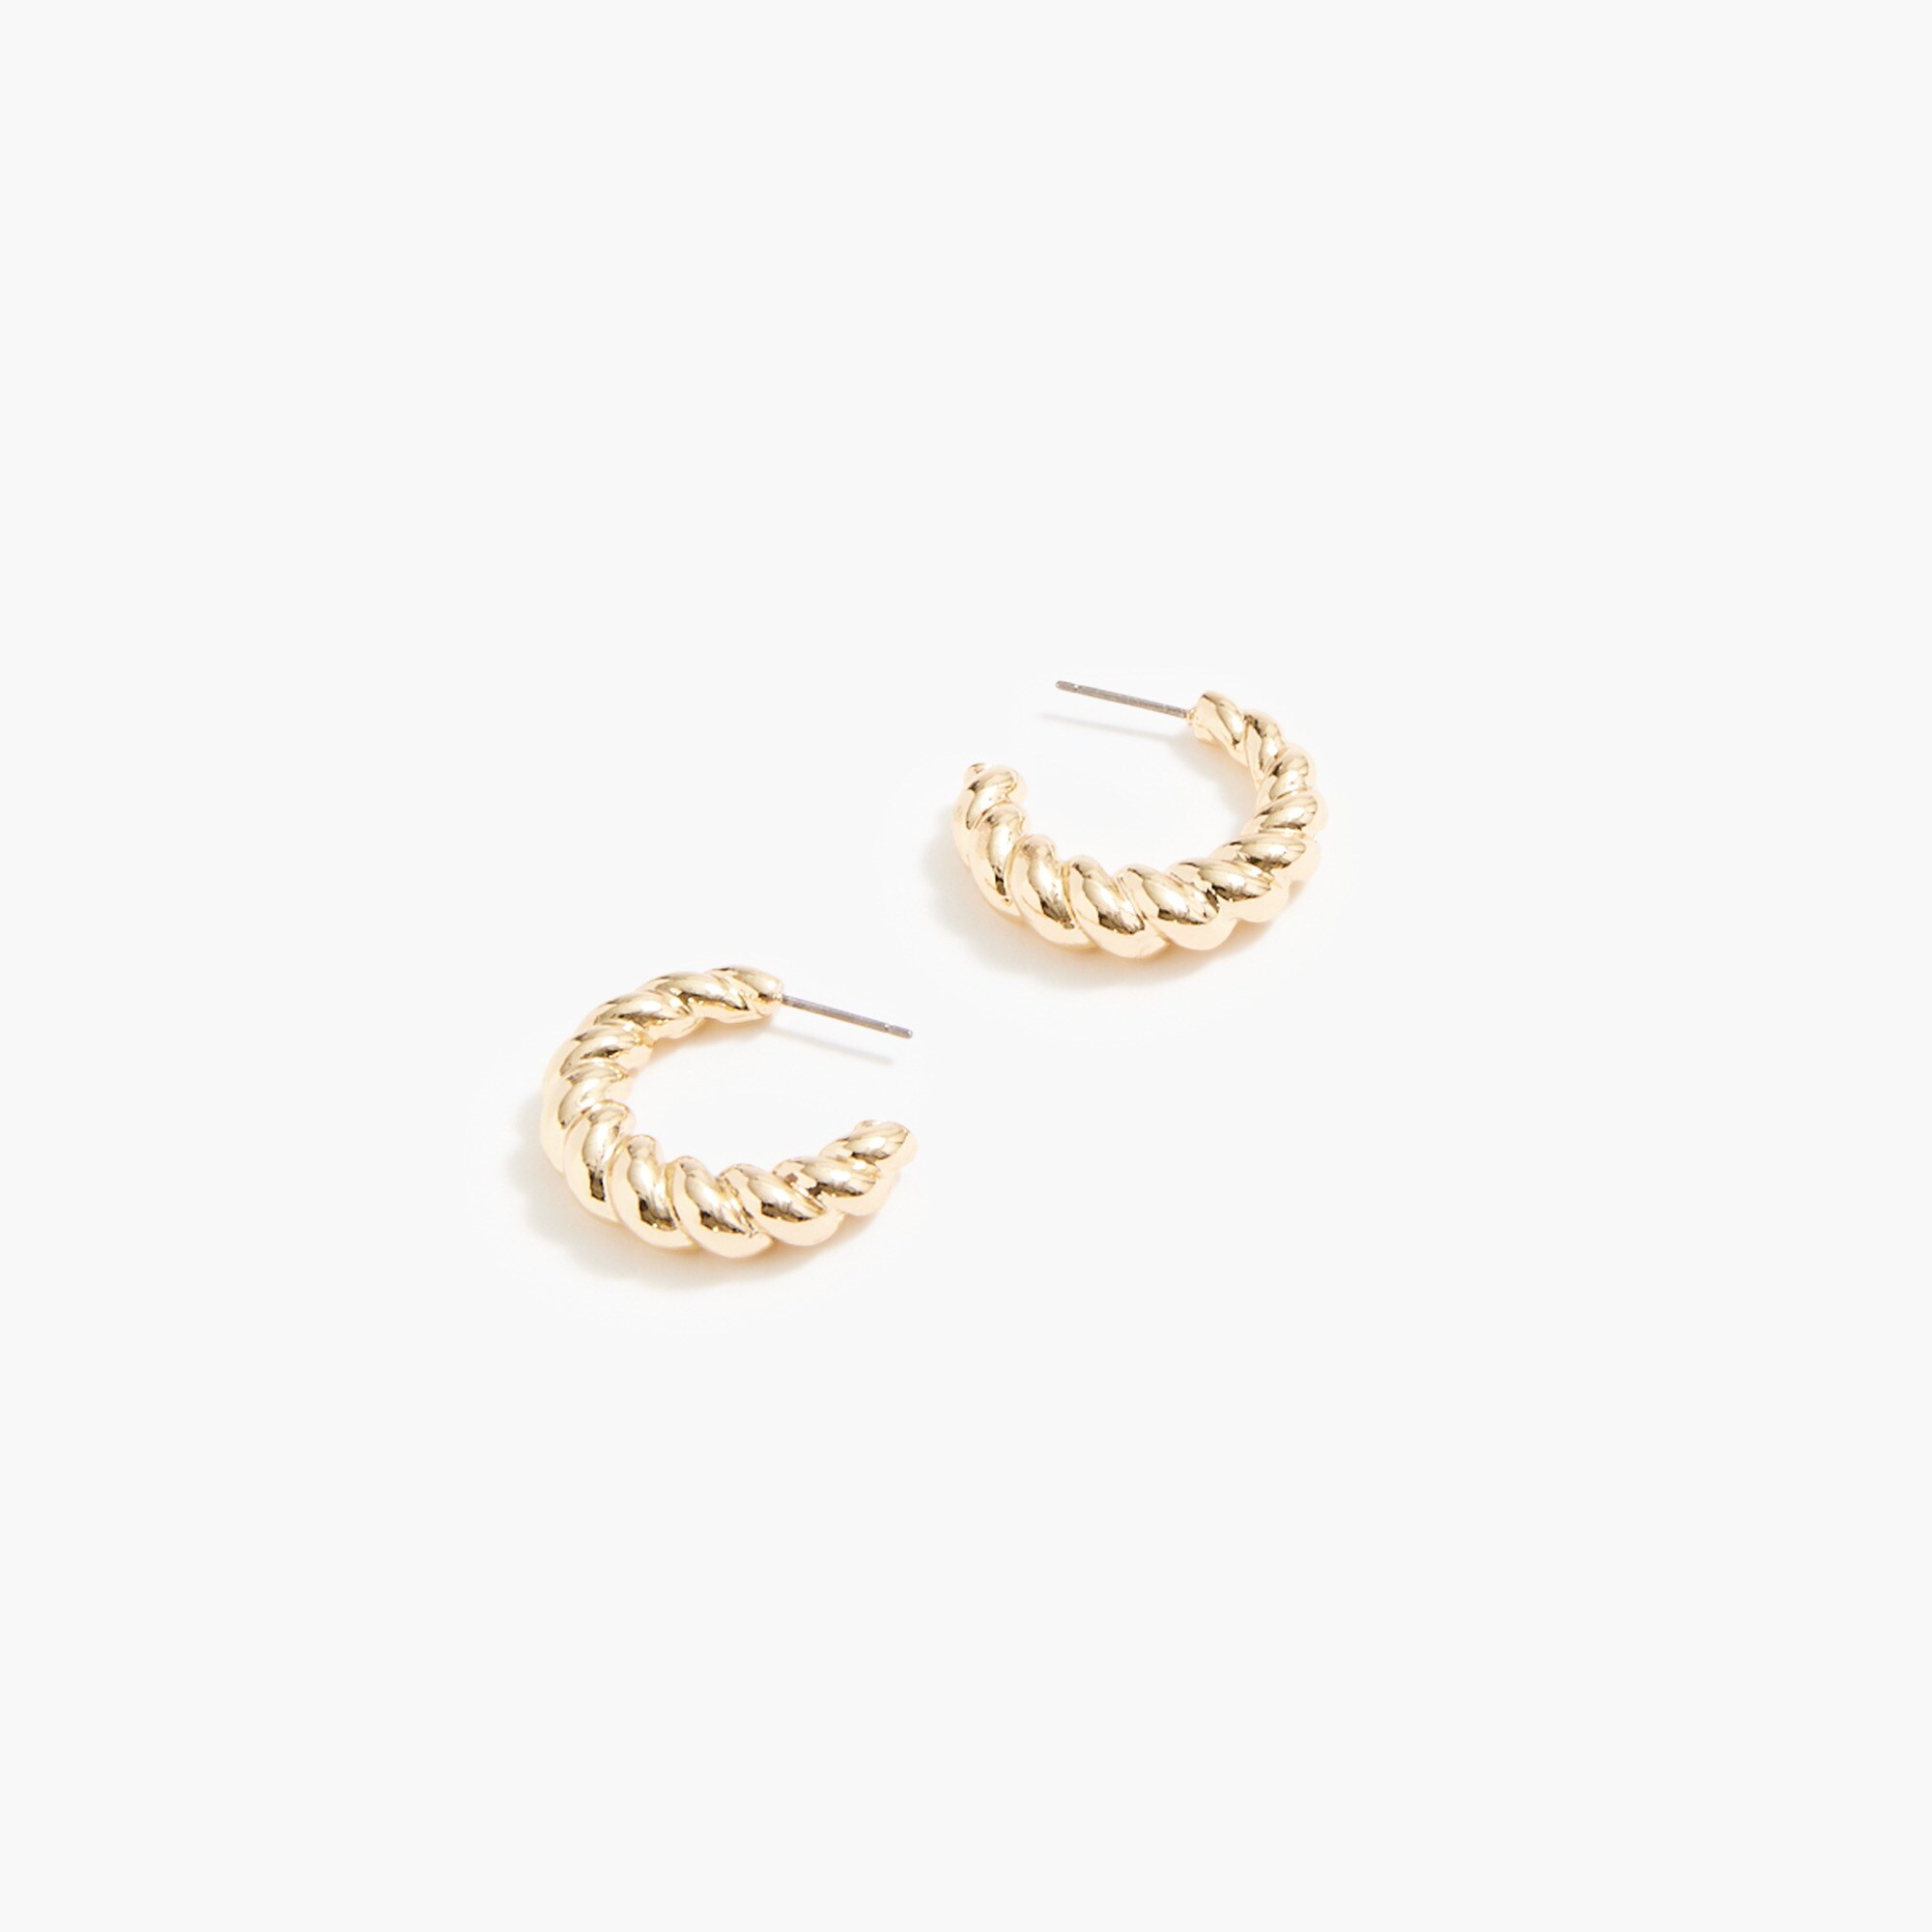  Small twisted hoop earrings